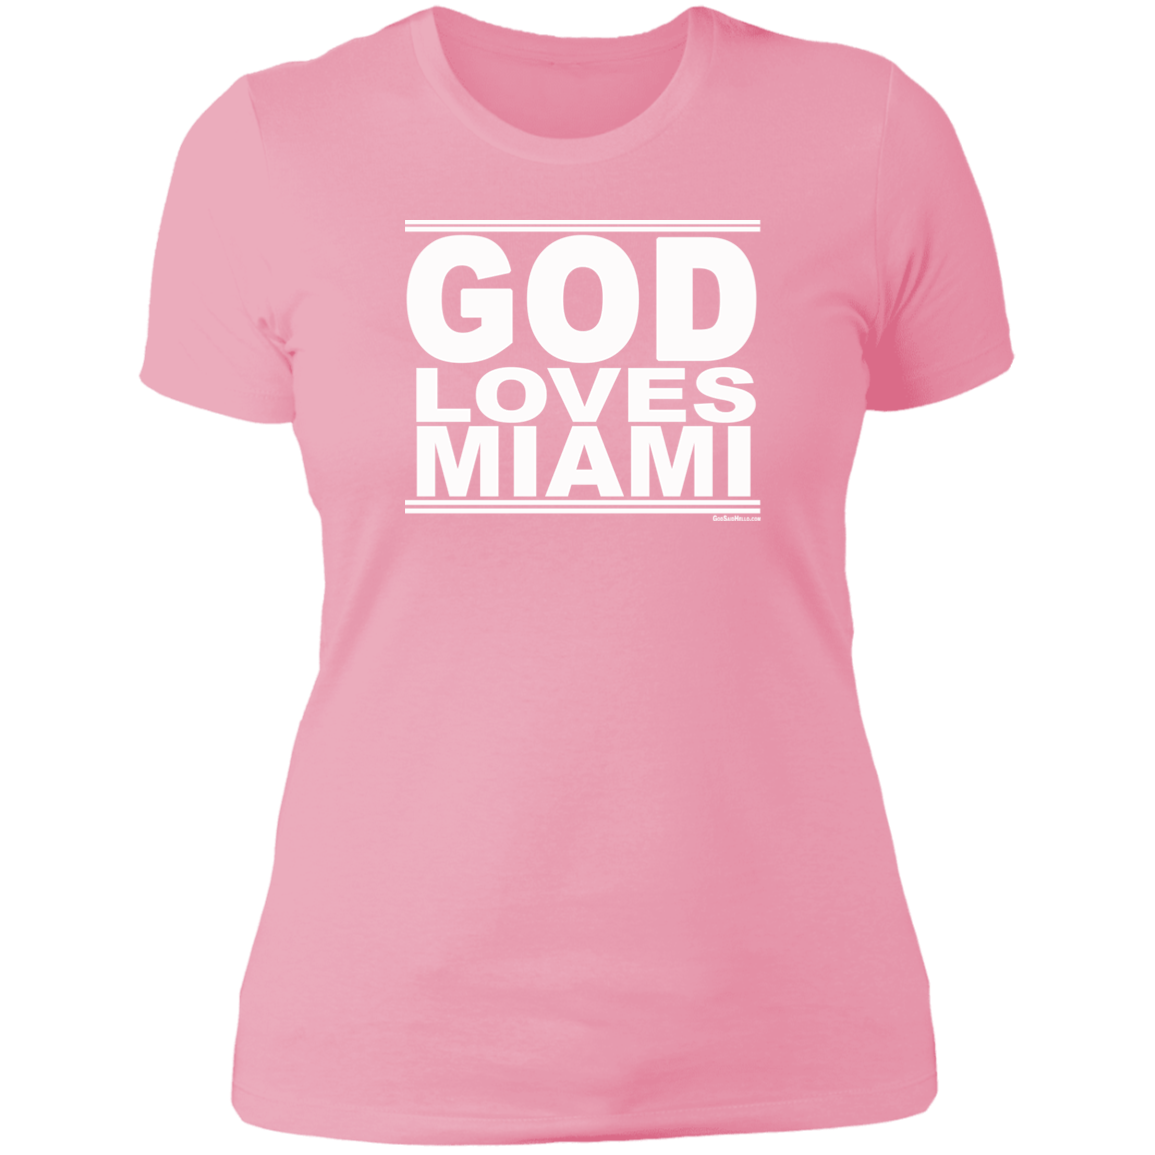 #GodLovesMiami - Women's Shortsleeve Tee